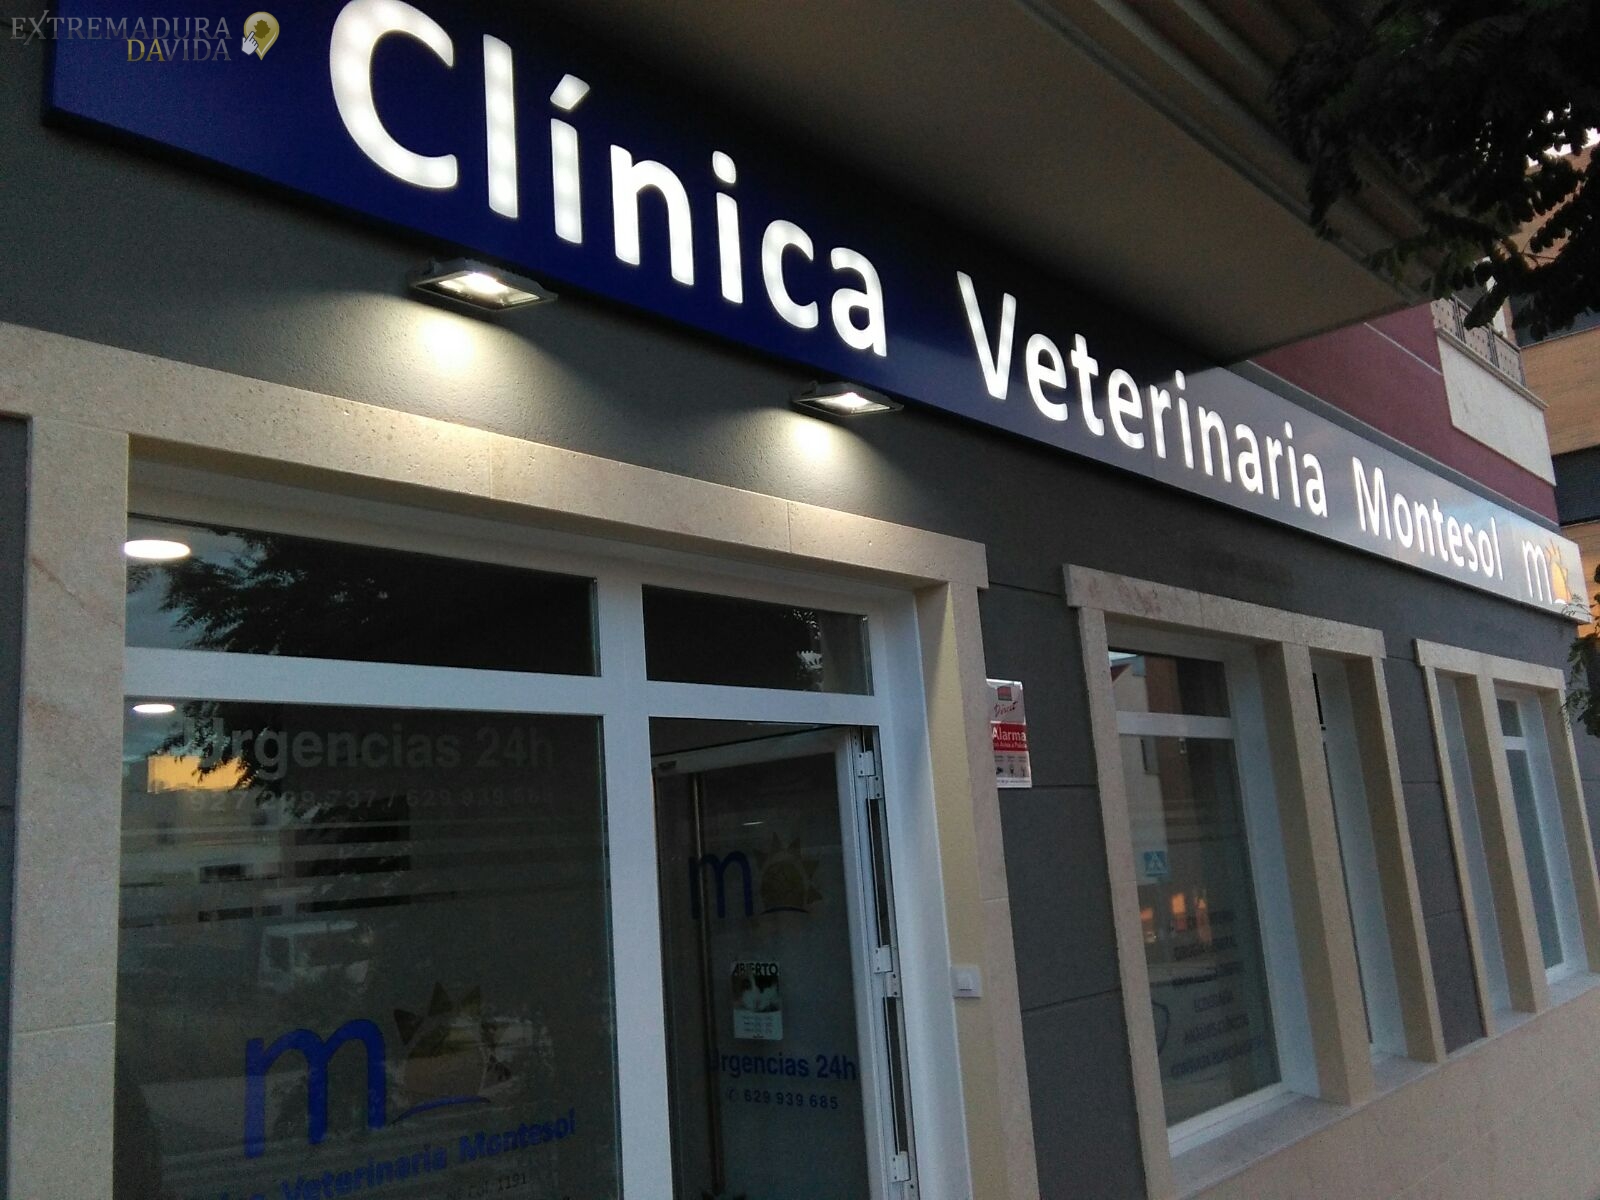 Clínica veterinaria 24 horas Cáceres Montesol 